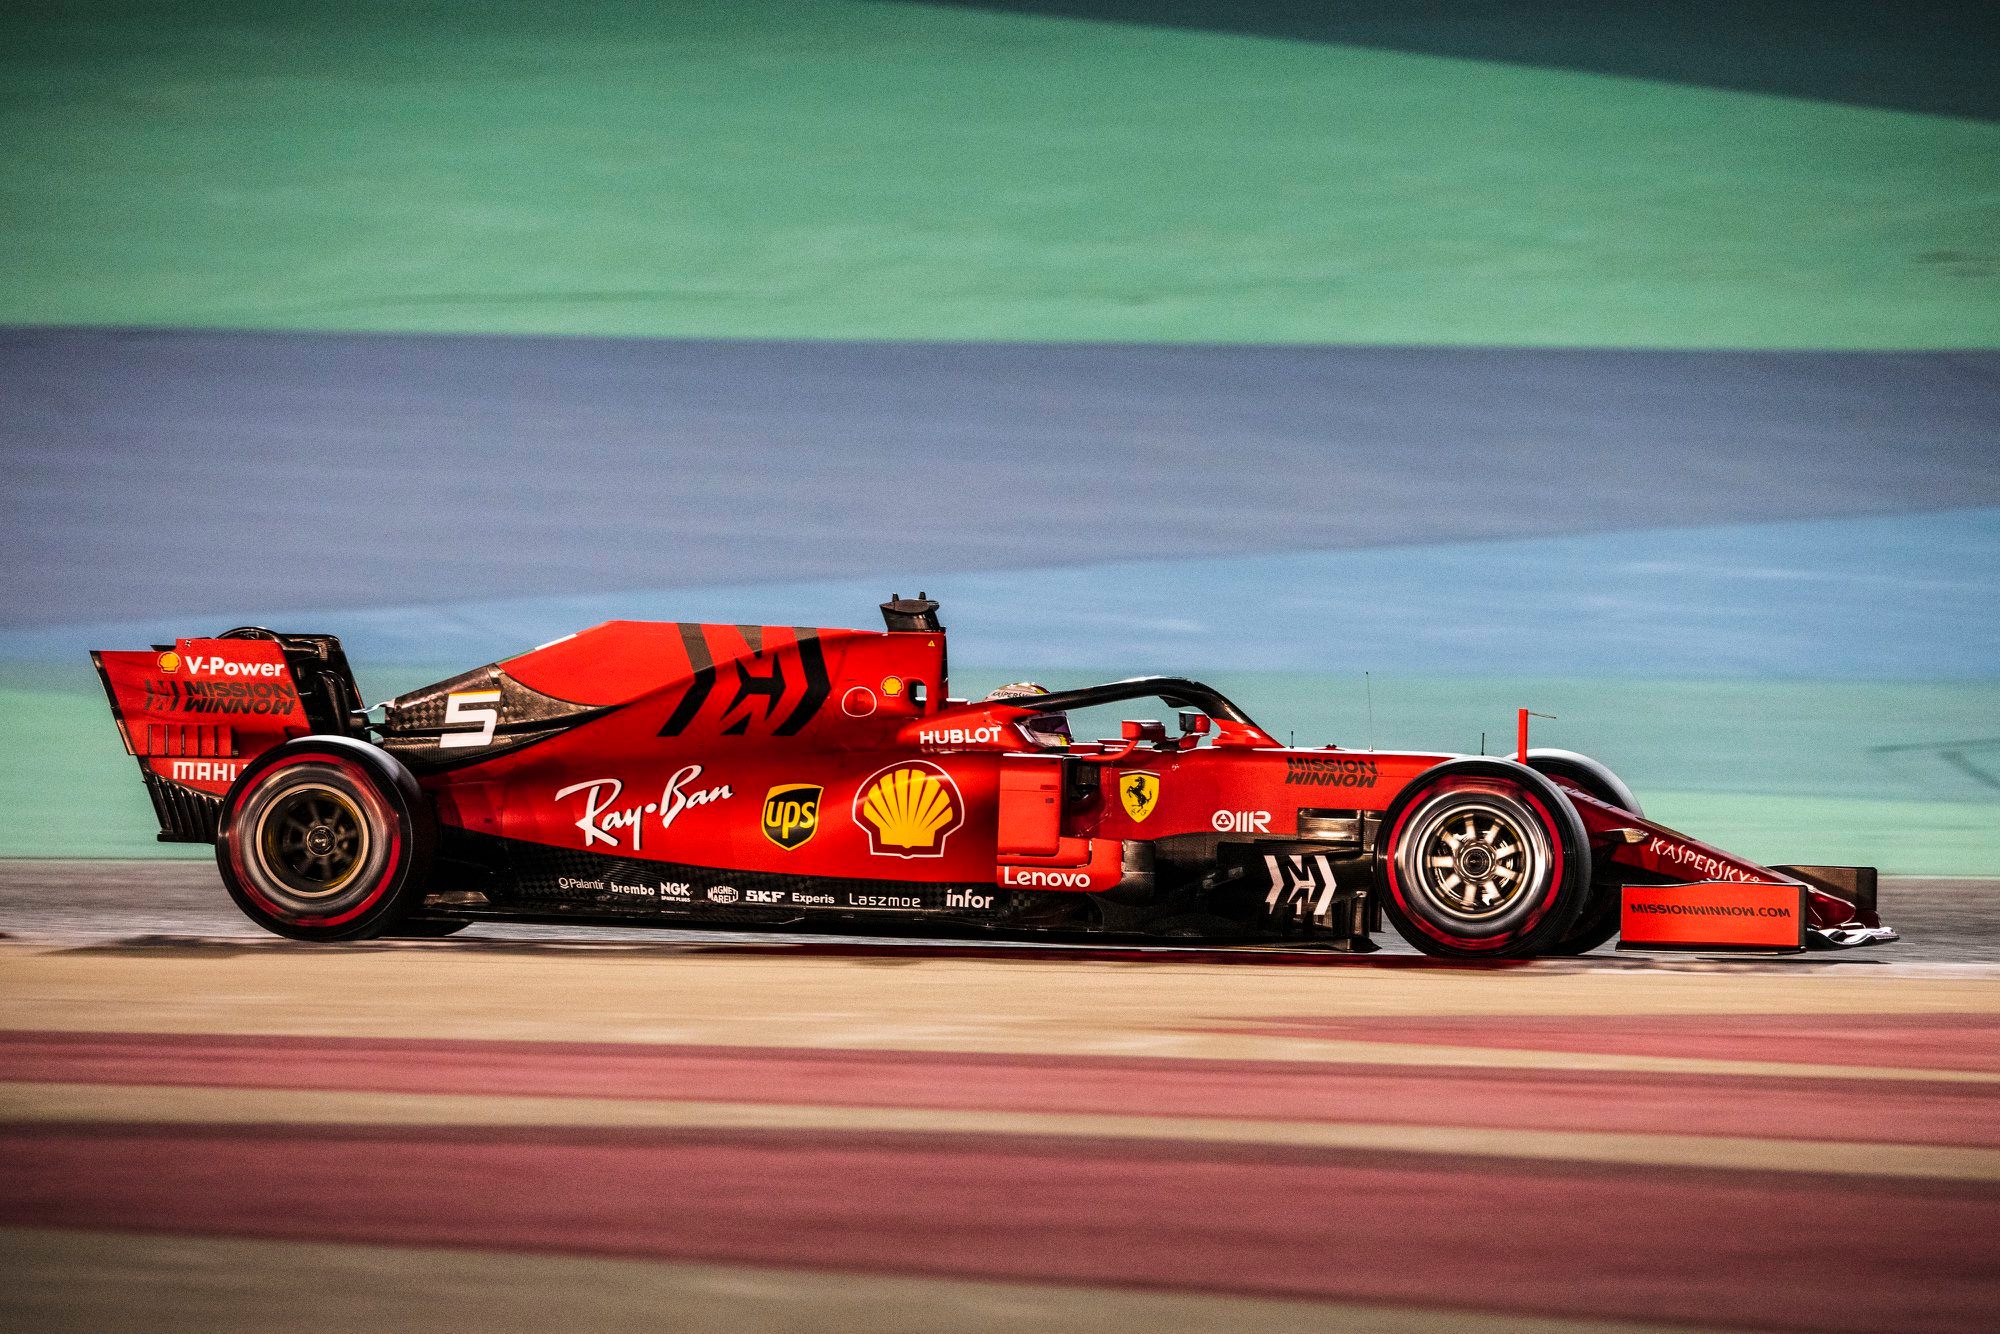 Rytinėje trečiadienio bandymų sesijoje greičiausias buvo S. Vettelis